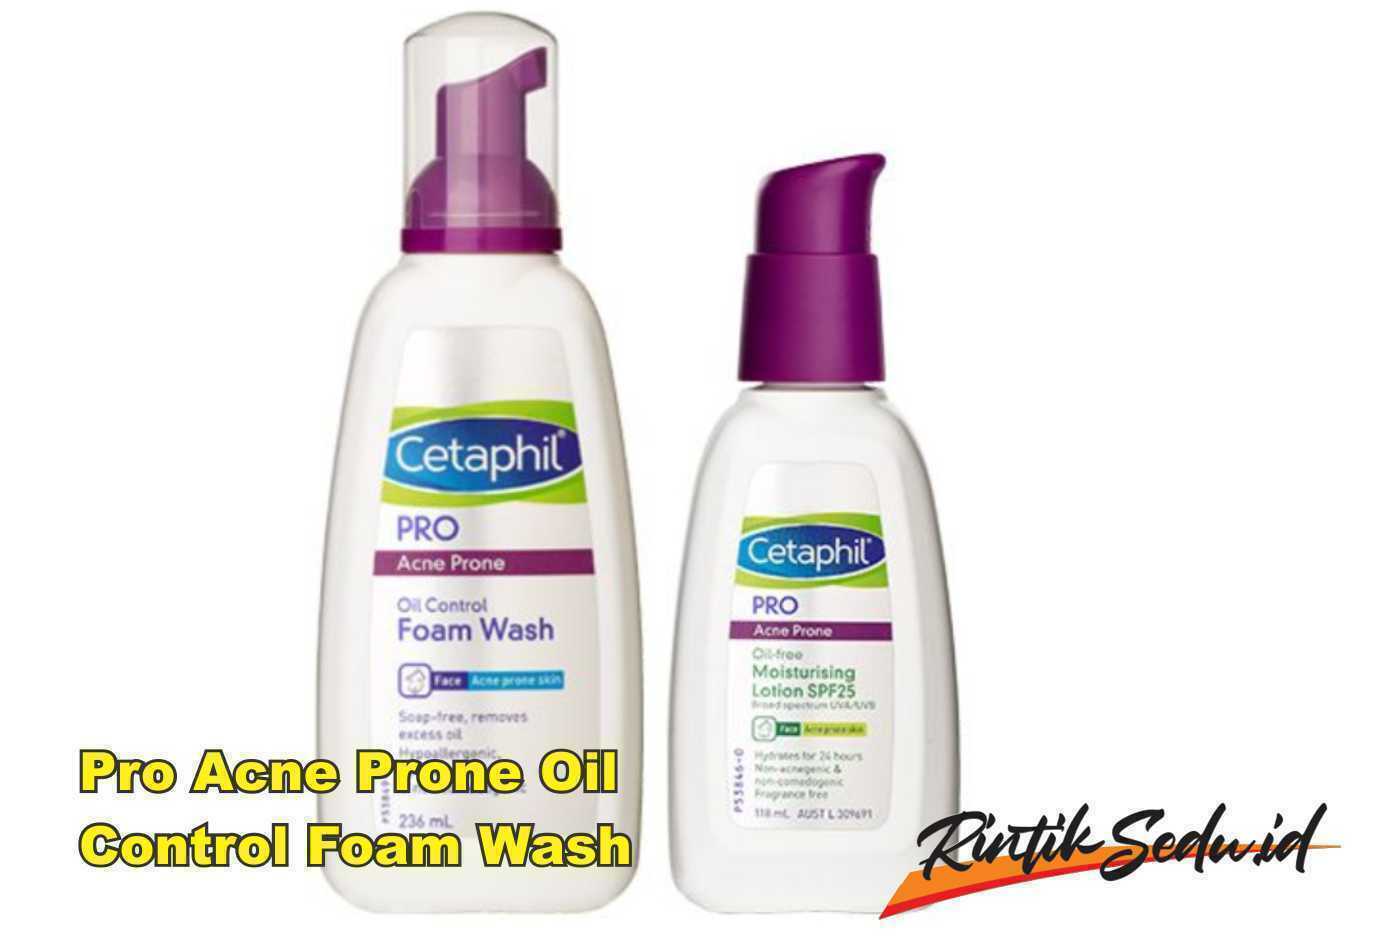 Pro Acne Prone Oil Control Foam Wash